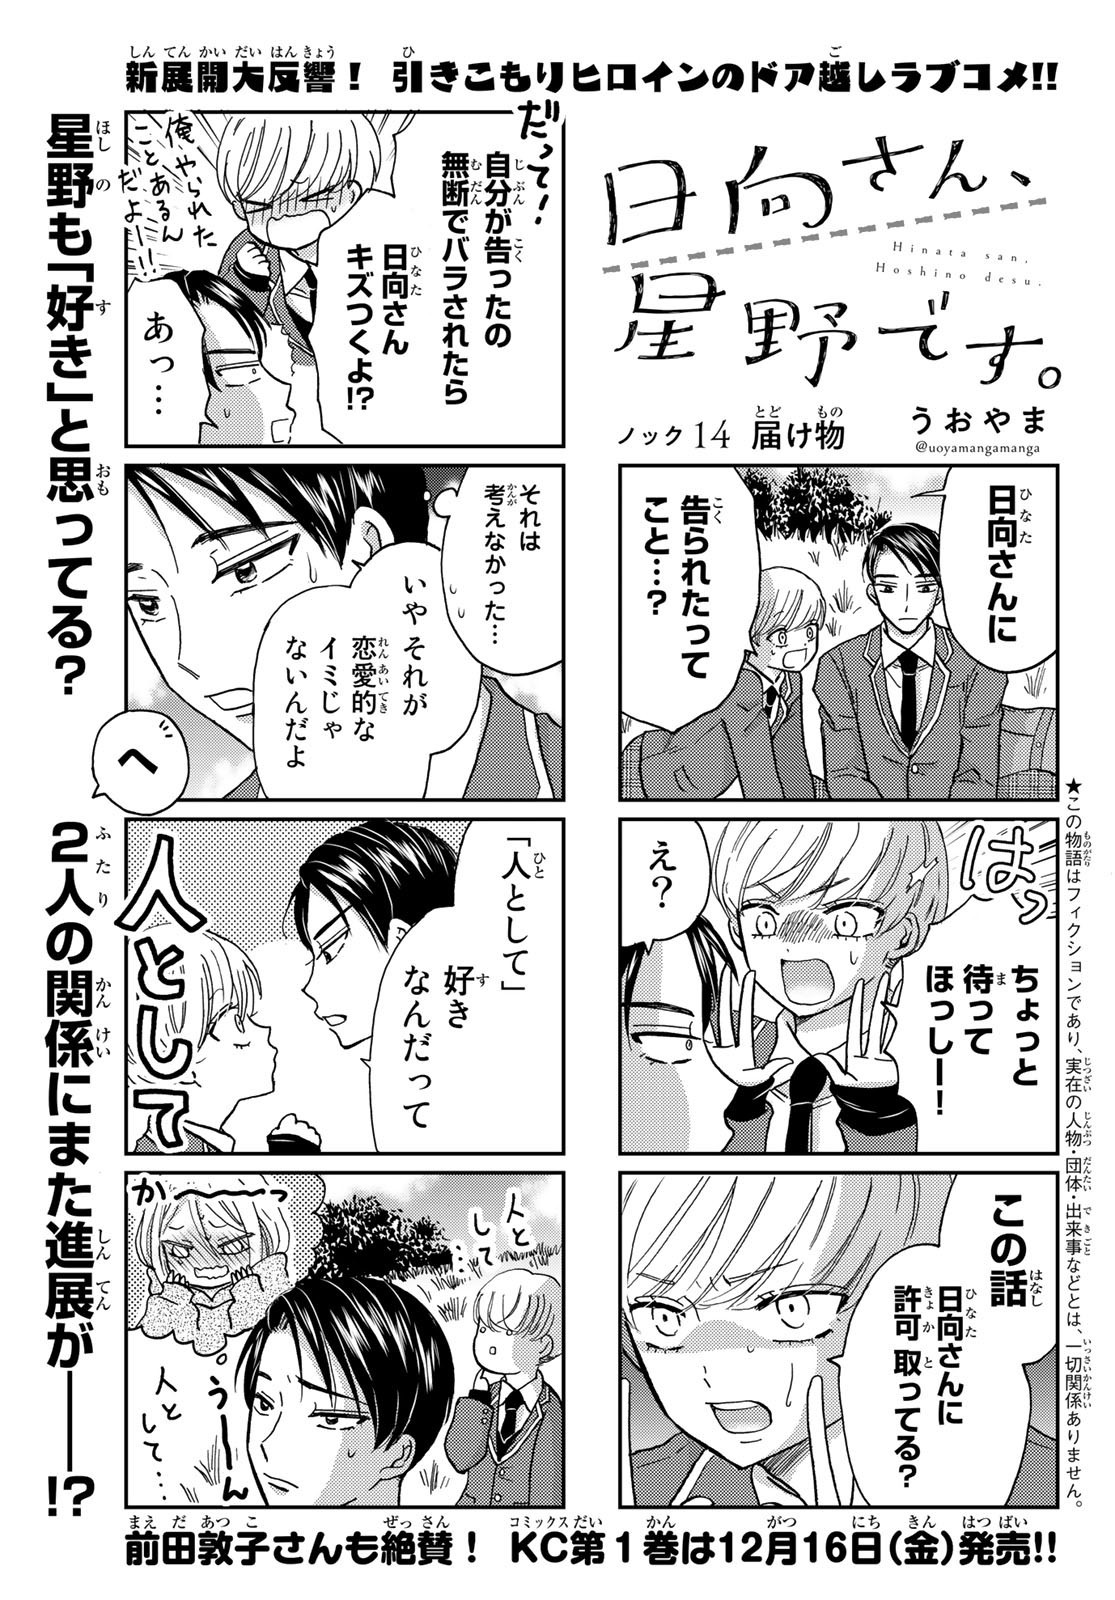 Hinata-san, Hoshino desu. - Chapter 014 - Page 1